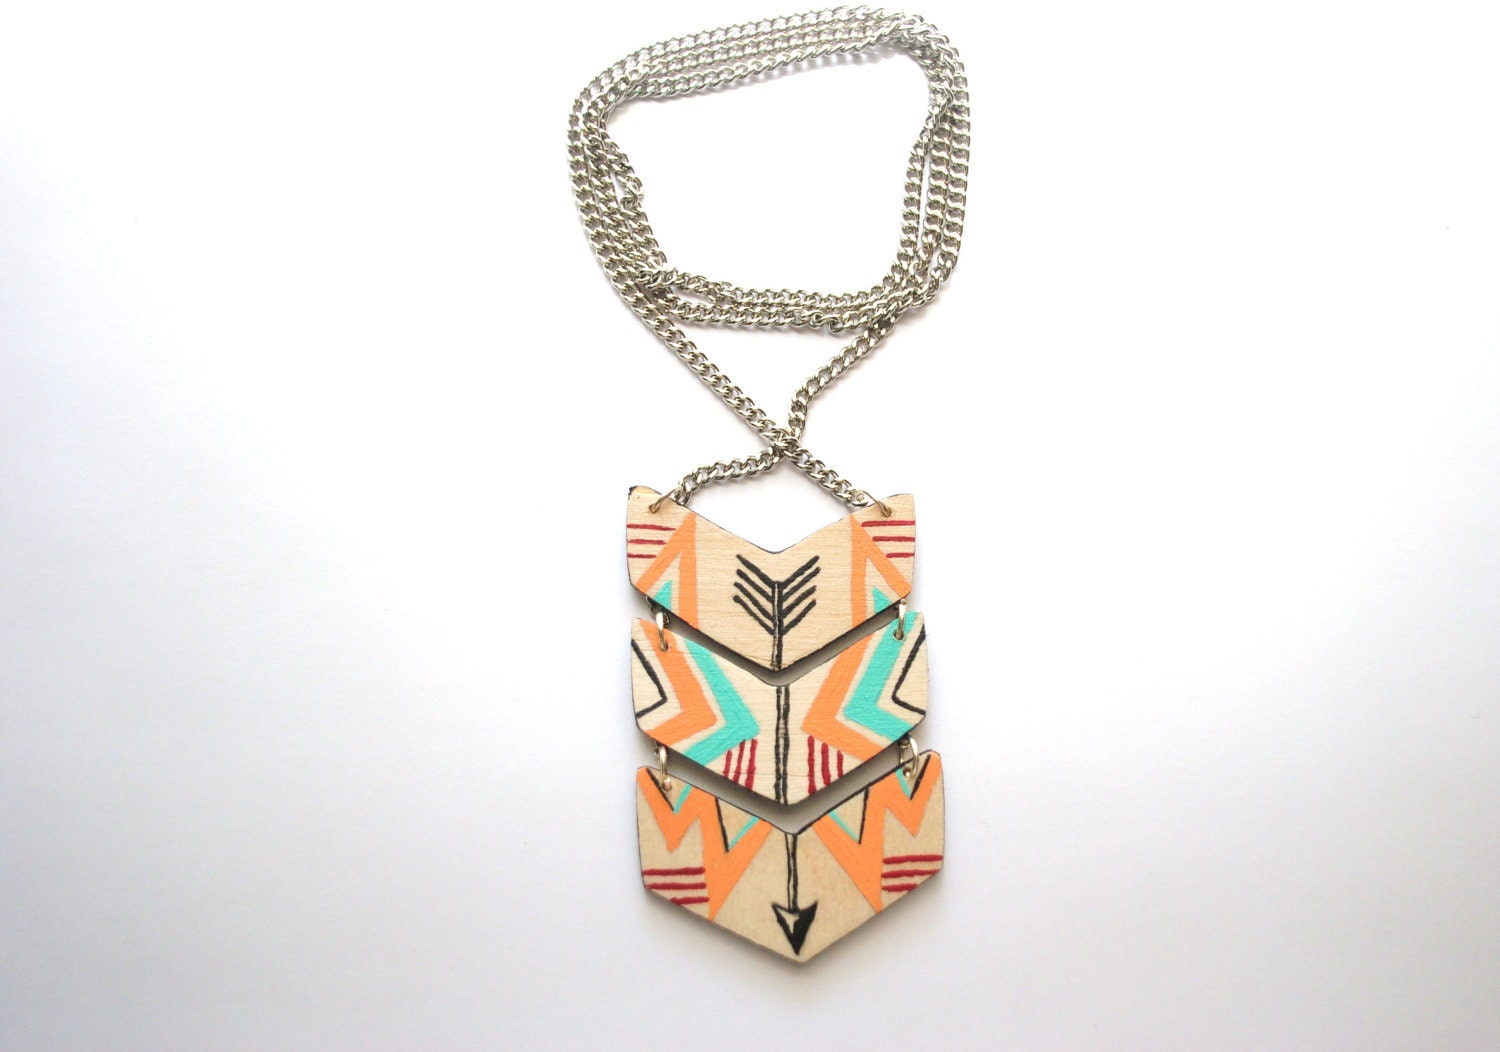 Layered Arrow Chevron Necklace - Silver Chain - Geometric Jewelry - TyroStudio